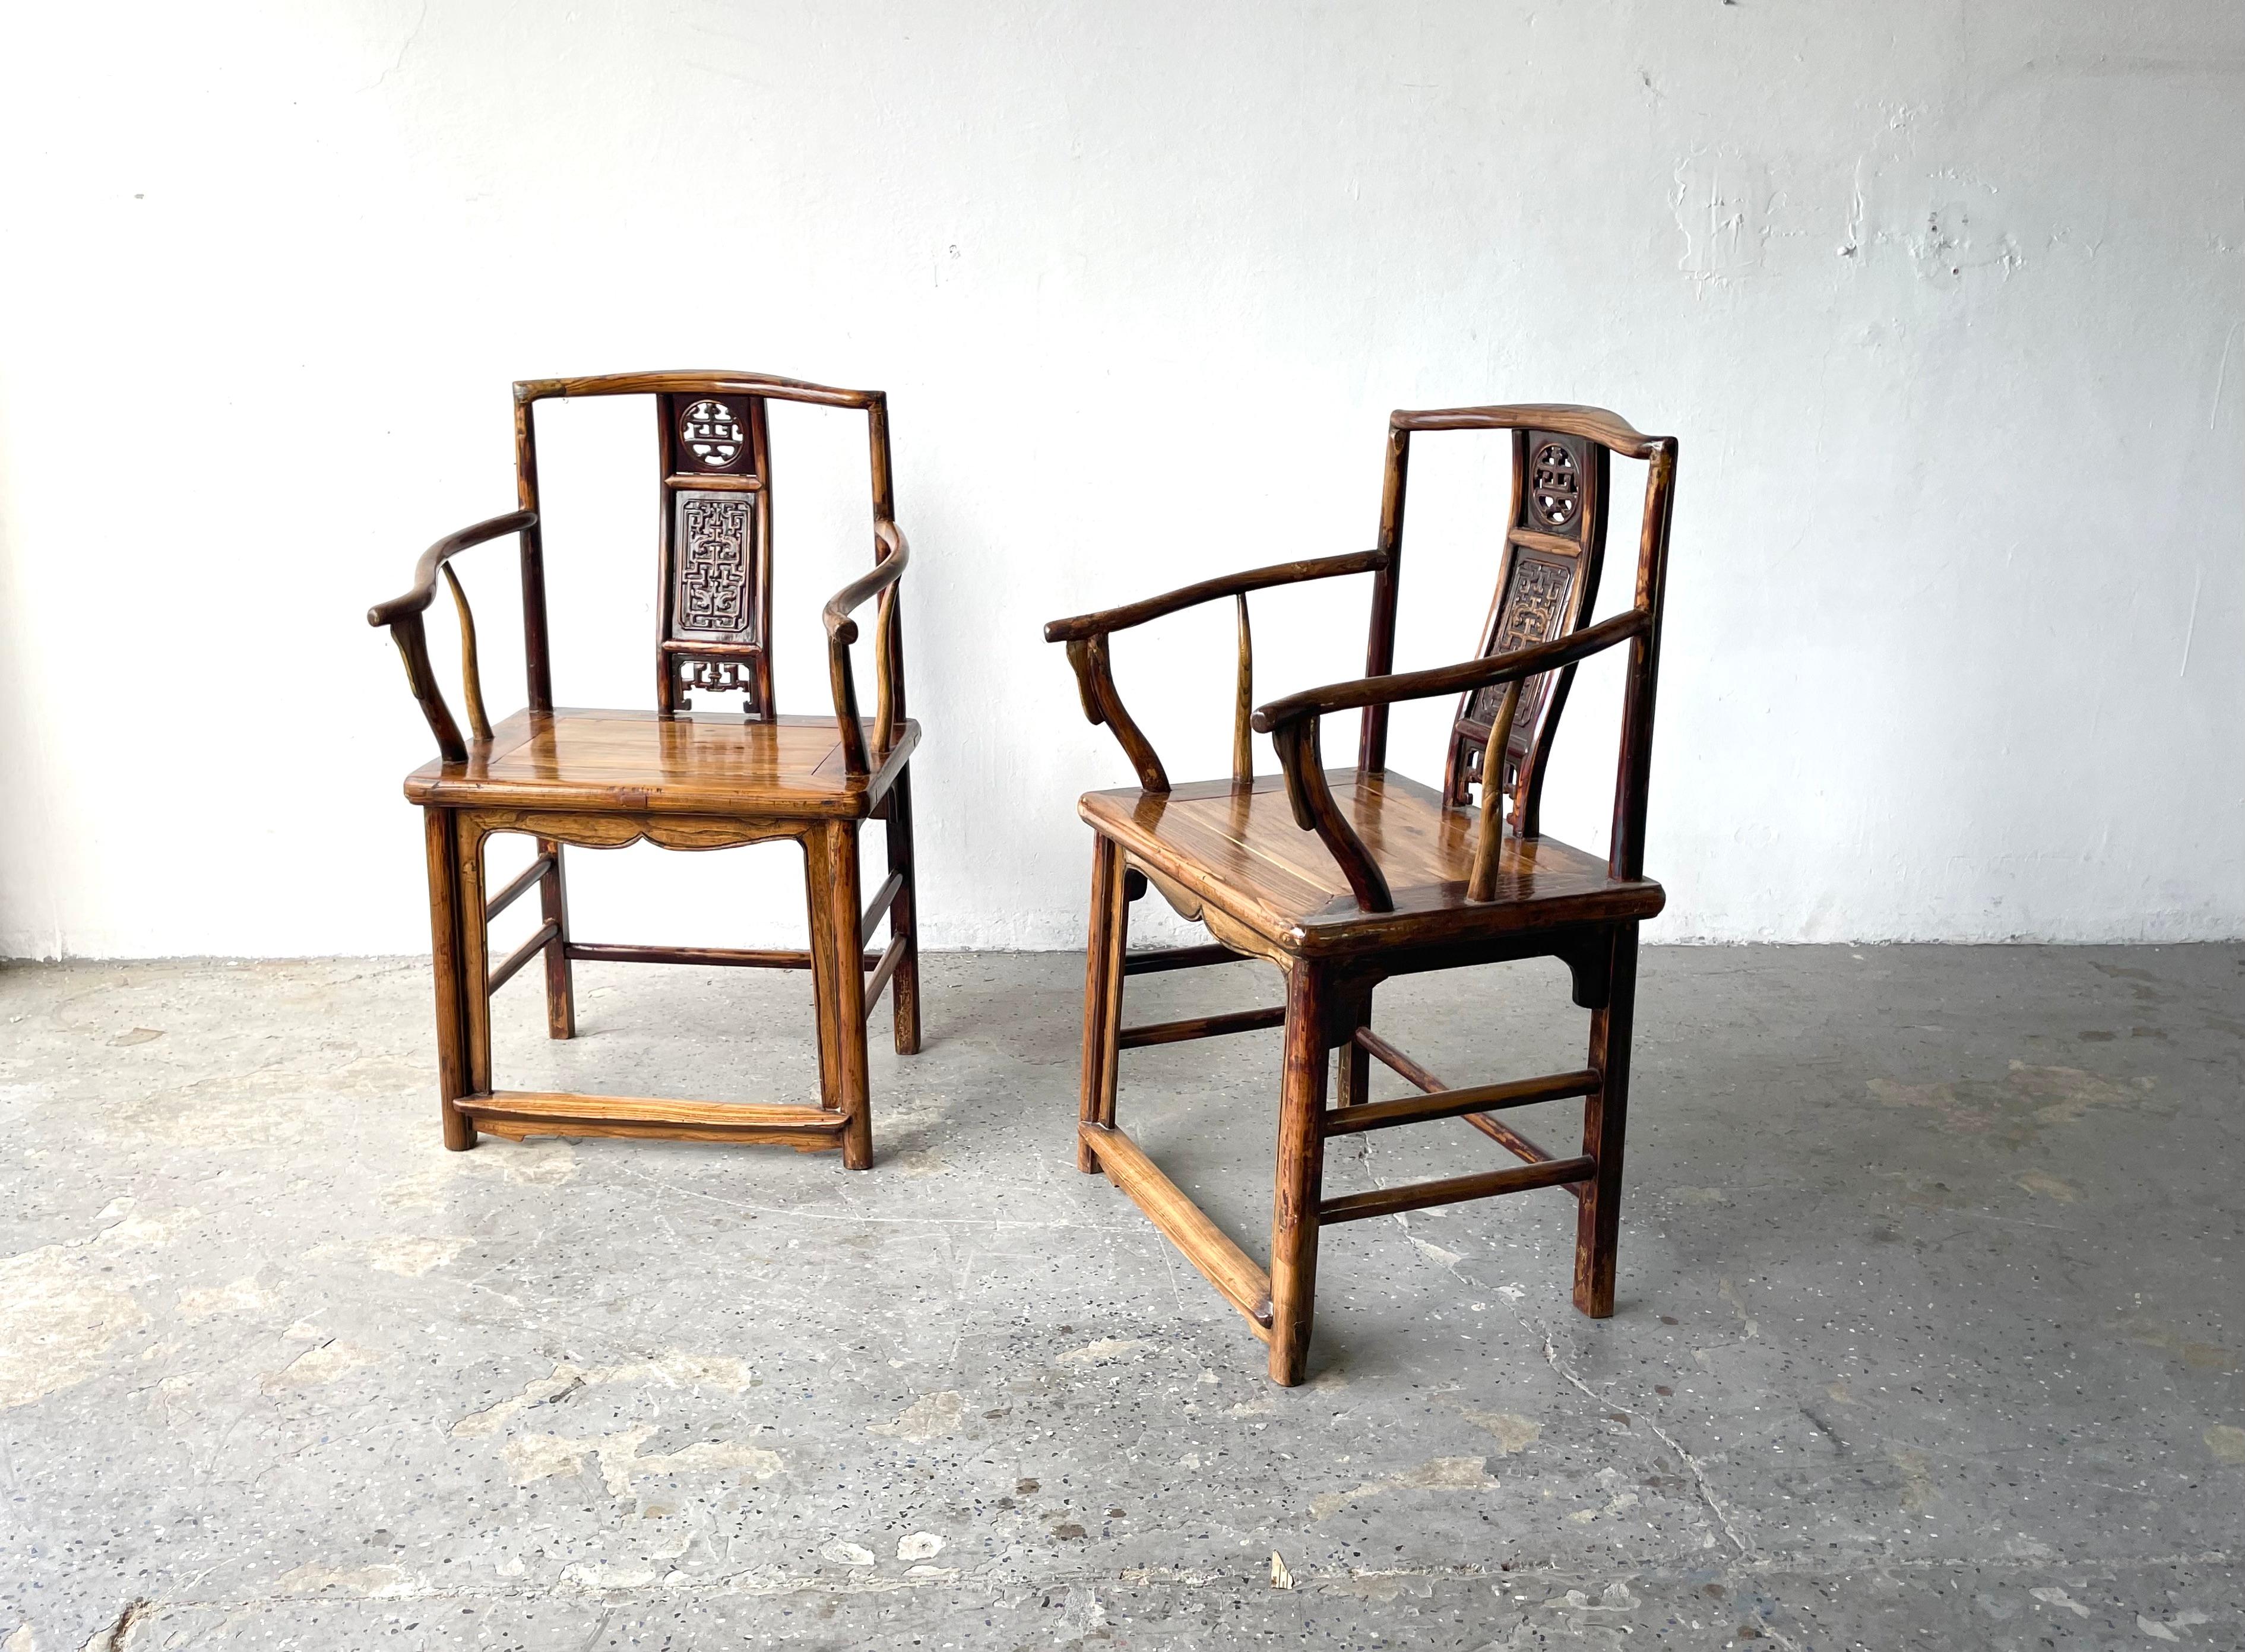 Paire de fauteuils chinois en bois dur du 19ème siècle (années 1800).

Paire absolument magnifique de chaises sculptées à la main et habilement exécutées. Avec leurs lignes élégantes et leur belle finition laquée, ces chaises chinoises du 19e